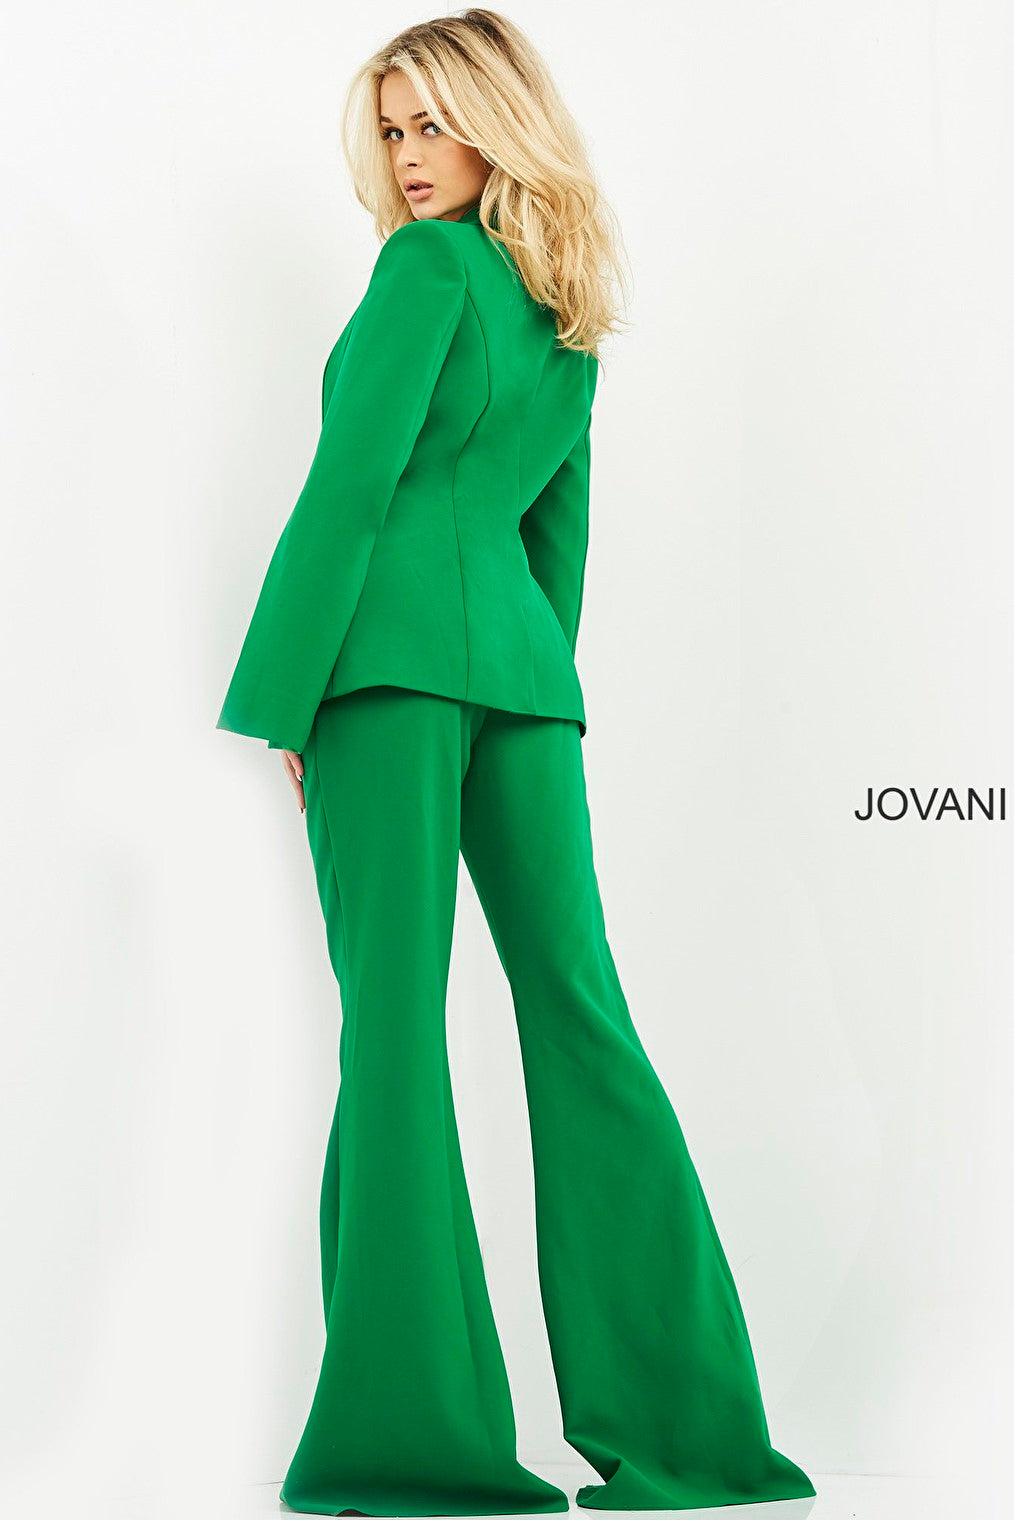 Green pant suit Jovani 06922